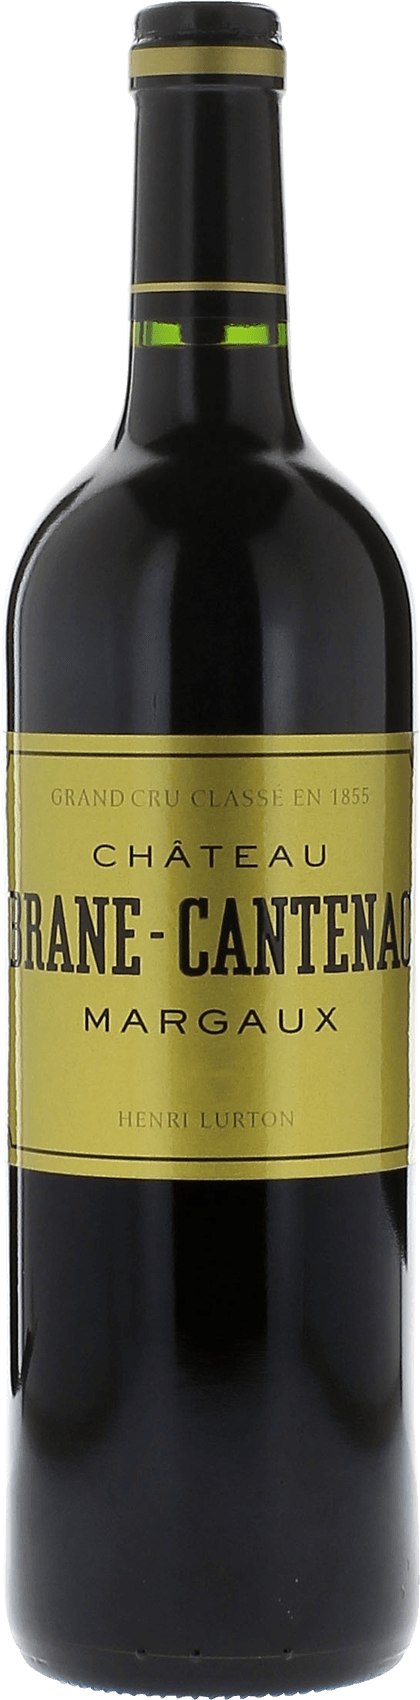 Brane cantenac 2017 2me Grand cru class Margaux, Bordeaux rouge